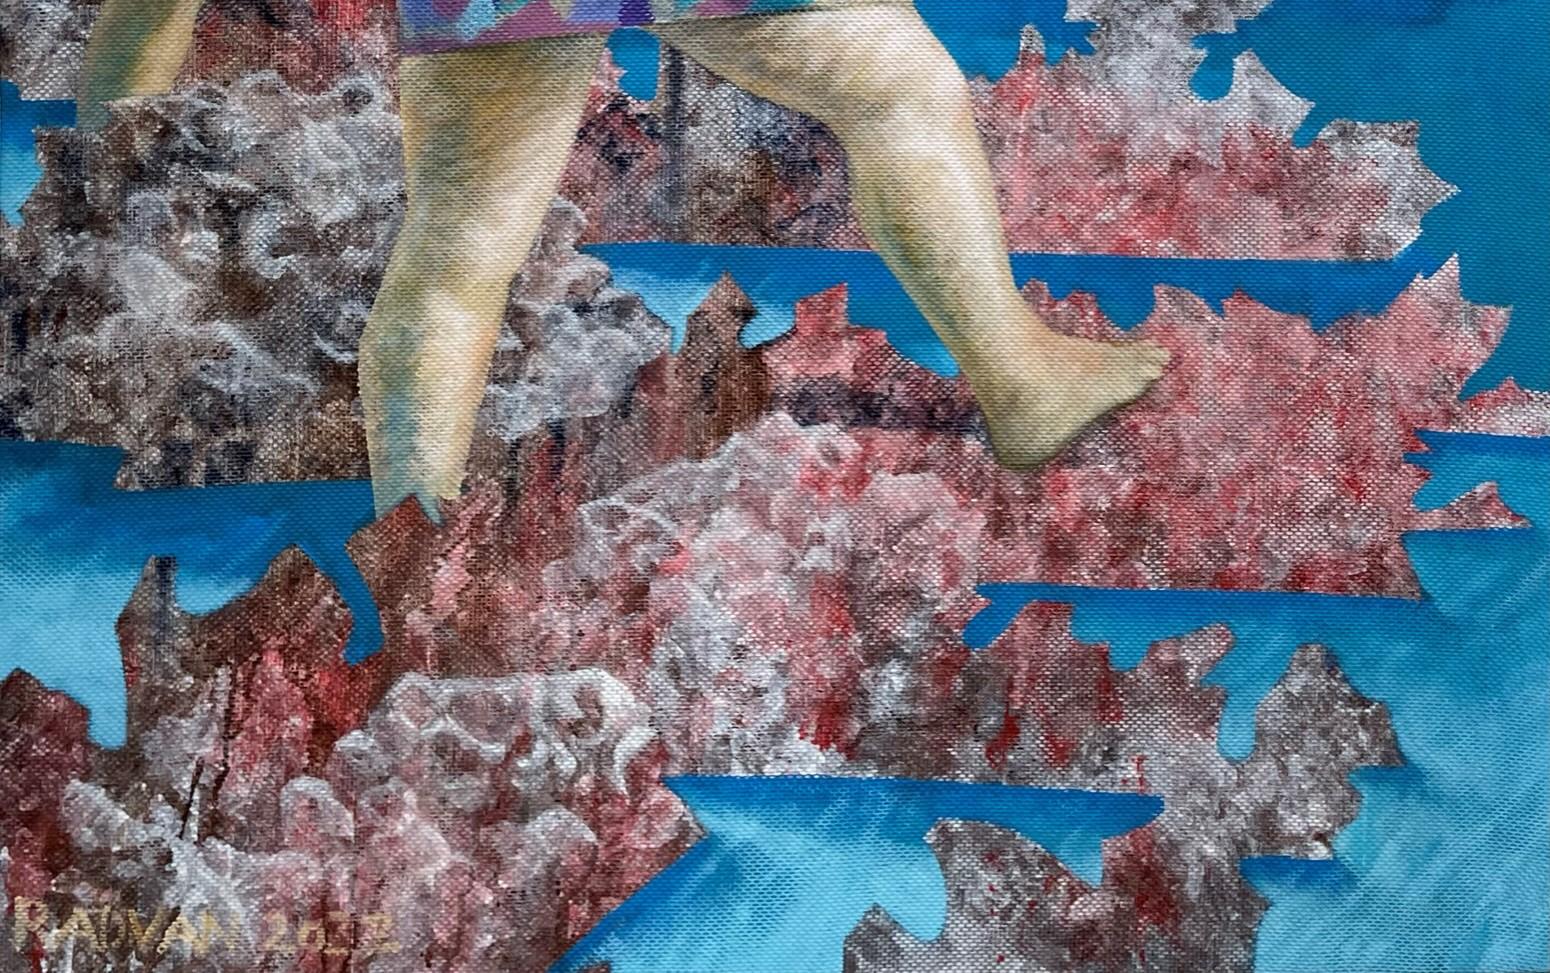 Menschen mit kleiner Krabbe, 2022
Acryl auf Leinwand
170 H x 130 B cm
66 59/64 H x 51 3/16 B cm 

In dem Gemälde von Alexandru Rădvan geht es um unsere 